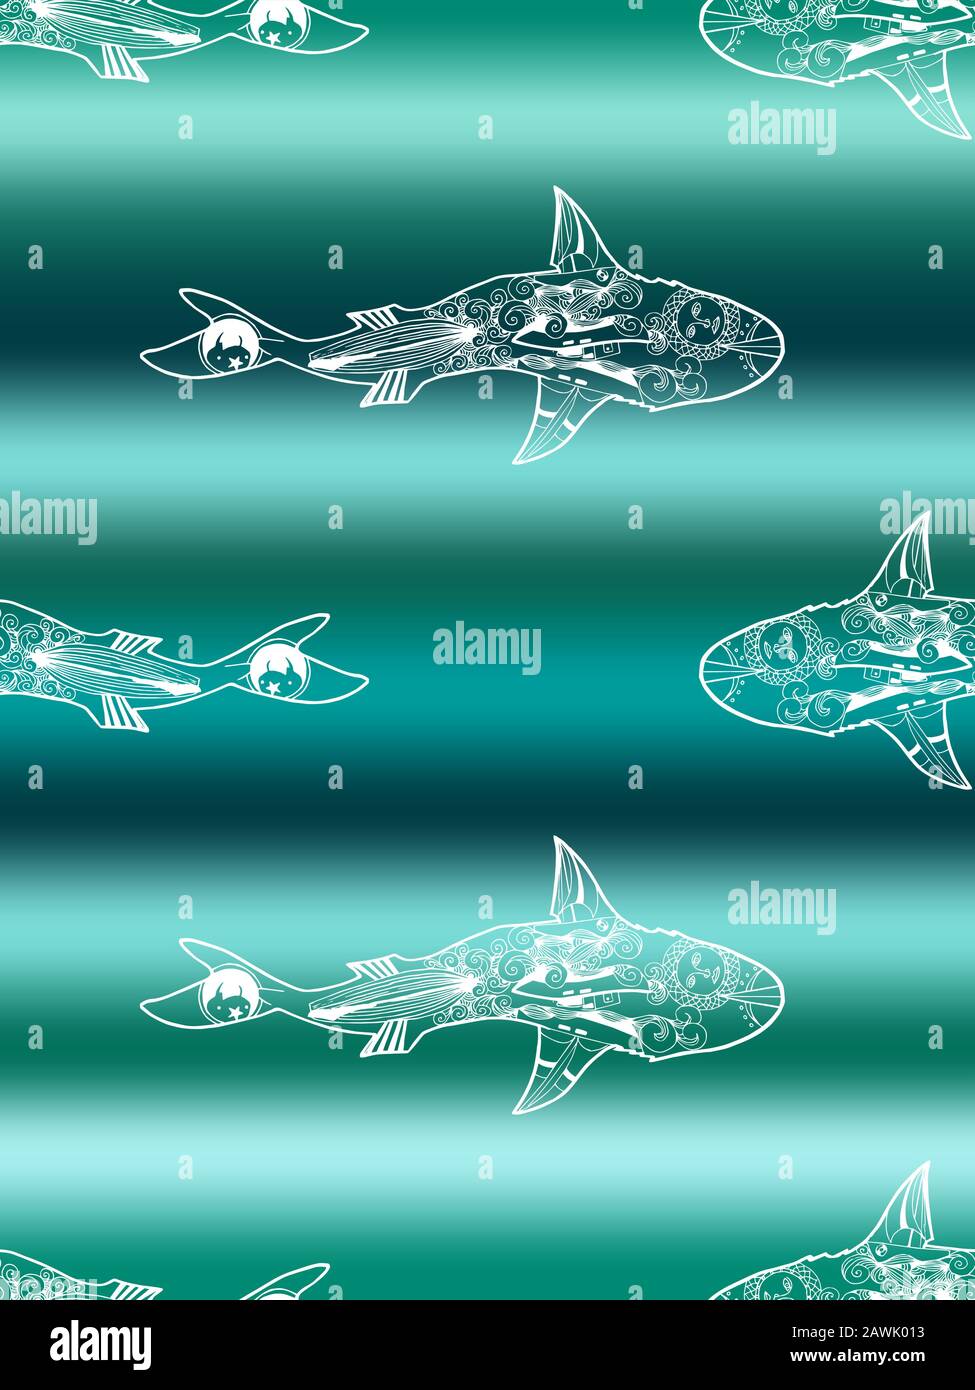 Modèle vectoriel sans couture de silhouette de requin blanc nageant sur fond marin dégradé. Vue de dessus du requin dessiné à la main Illustration de Vecteur